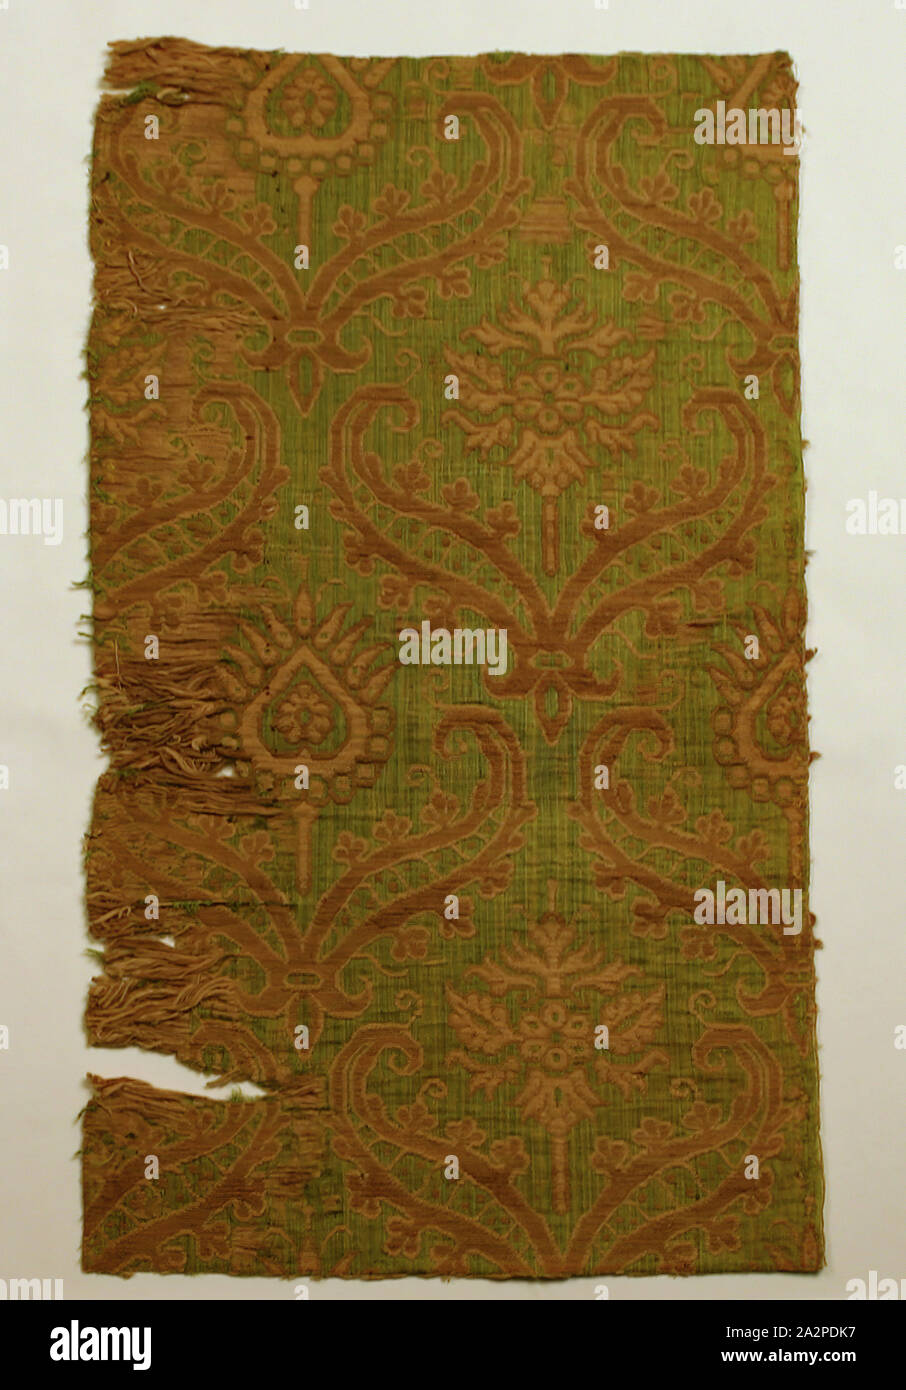 Inconnu (Espagnol), Fragment de textile, xvie siècle, lampas, 19 1/2 x 10 in Banque D'Images